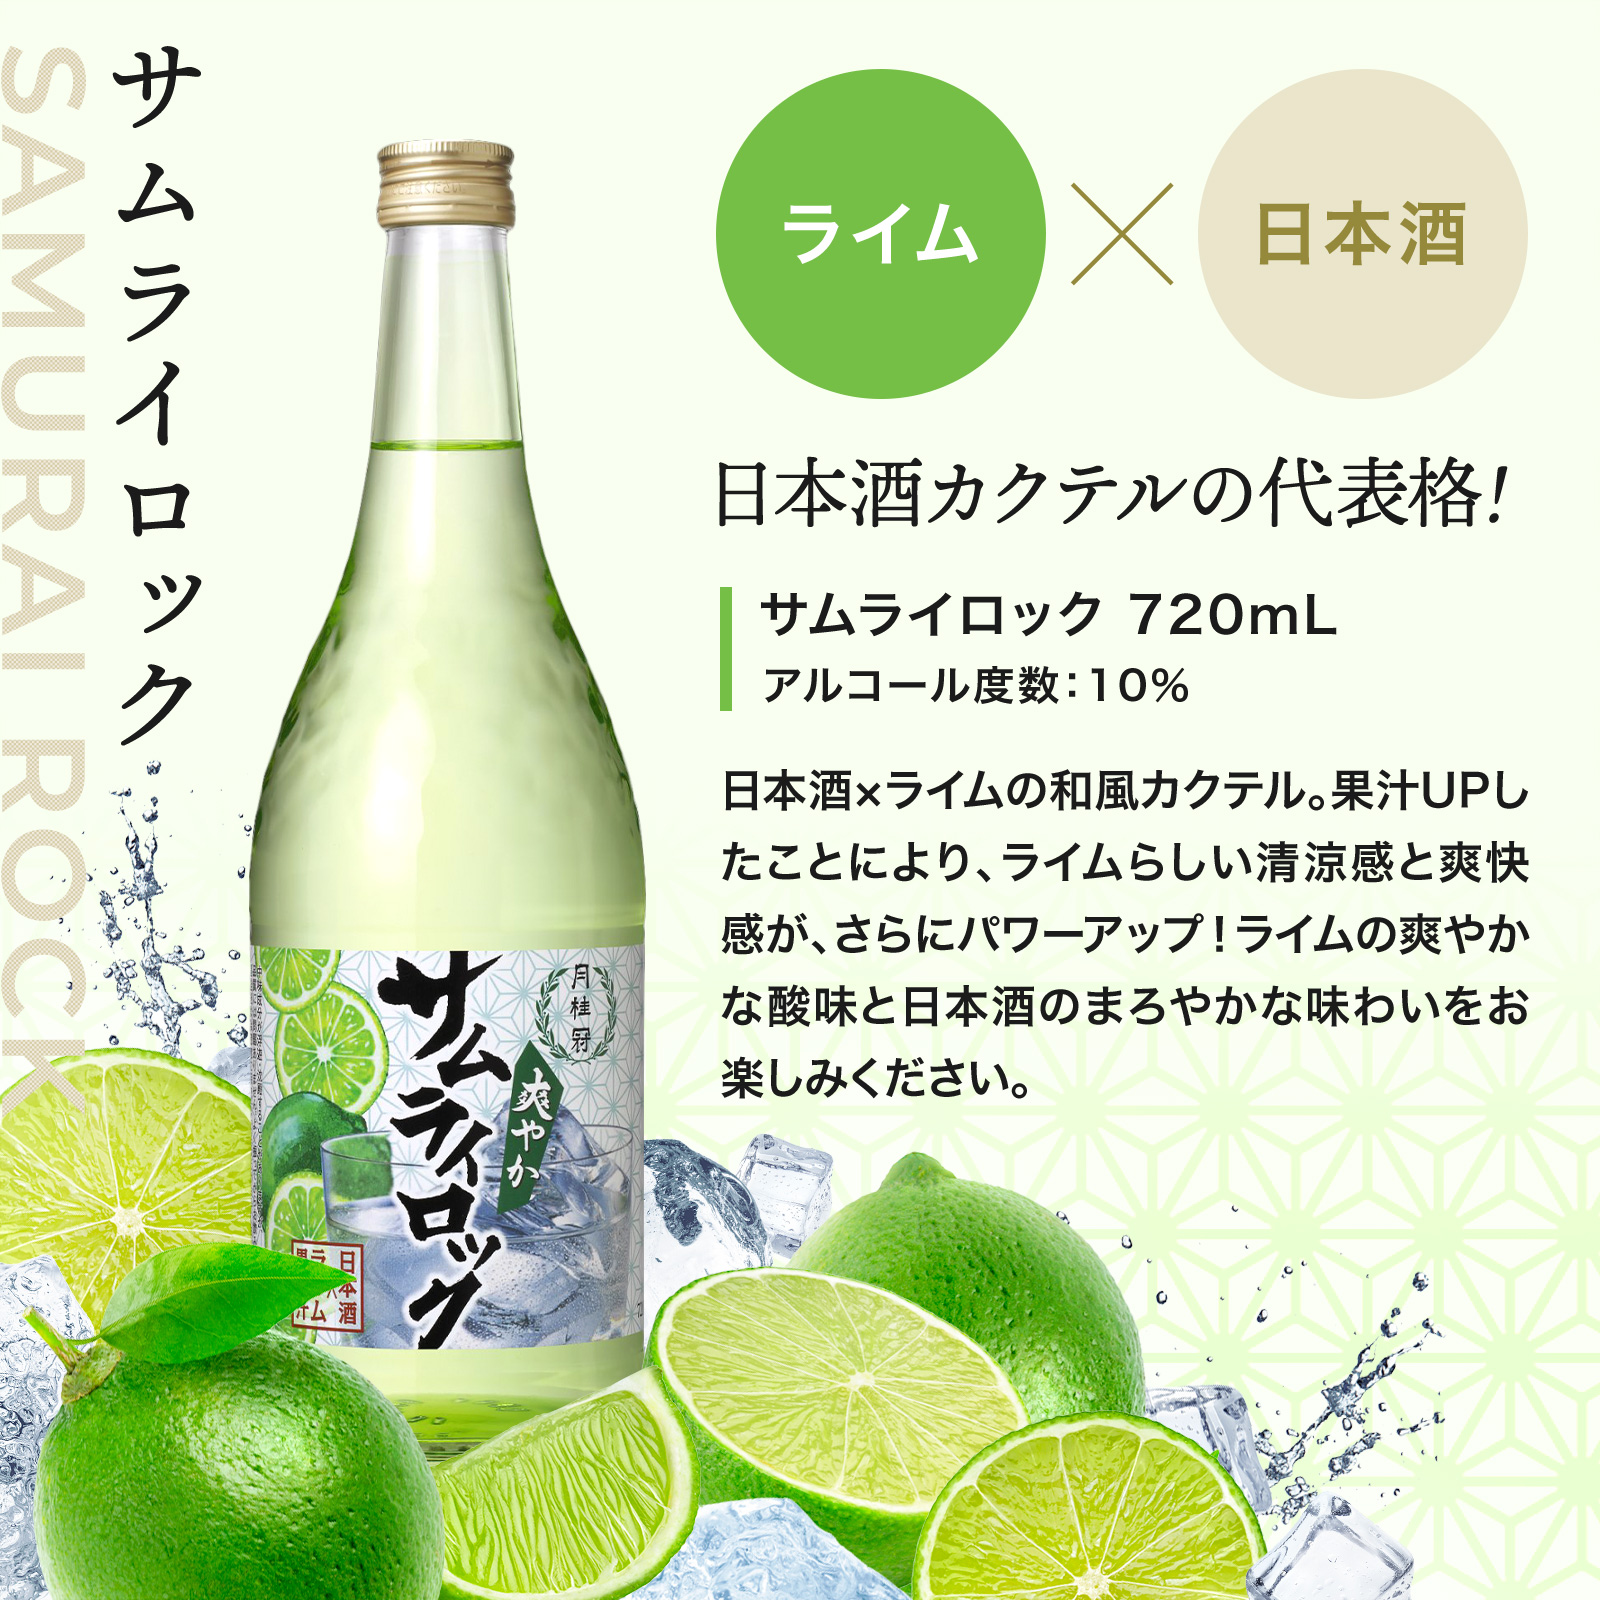 日本酒カクテルの代表格! サムライロック 720mL アルコール度数:10% 日本酒×ライムの和風カクテル。果汁UPし たことにより、ライムらしい清涼感と爽快感が、さらにパワーアップ!ライムの爽やかな酸味と日本酒のまろやかな味わいをお楽しみください。